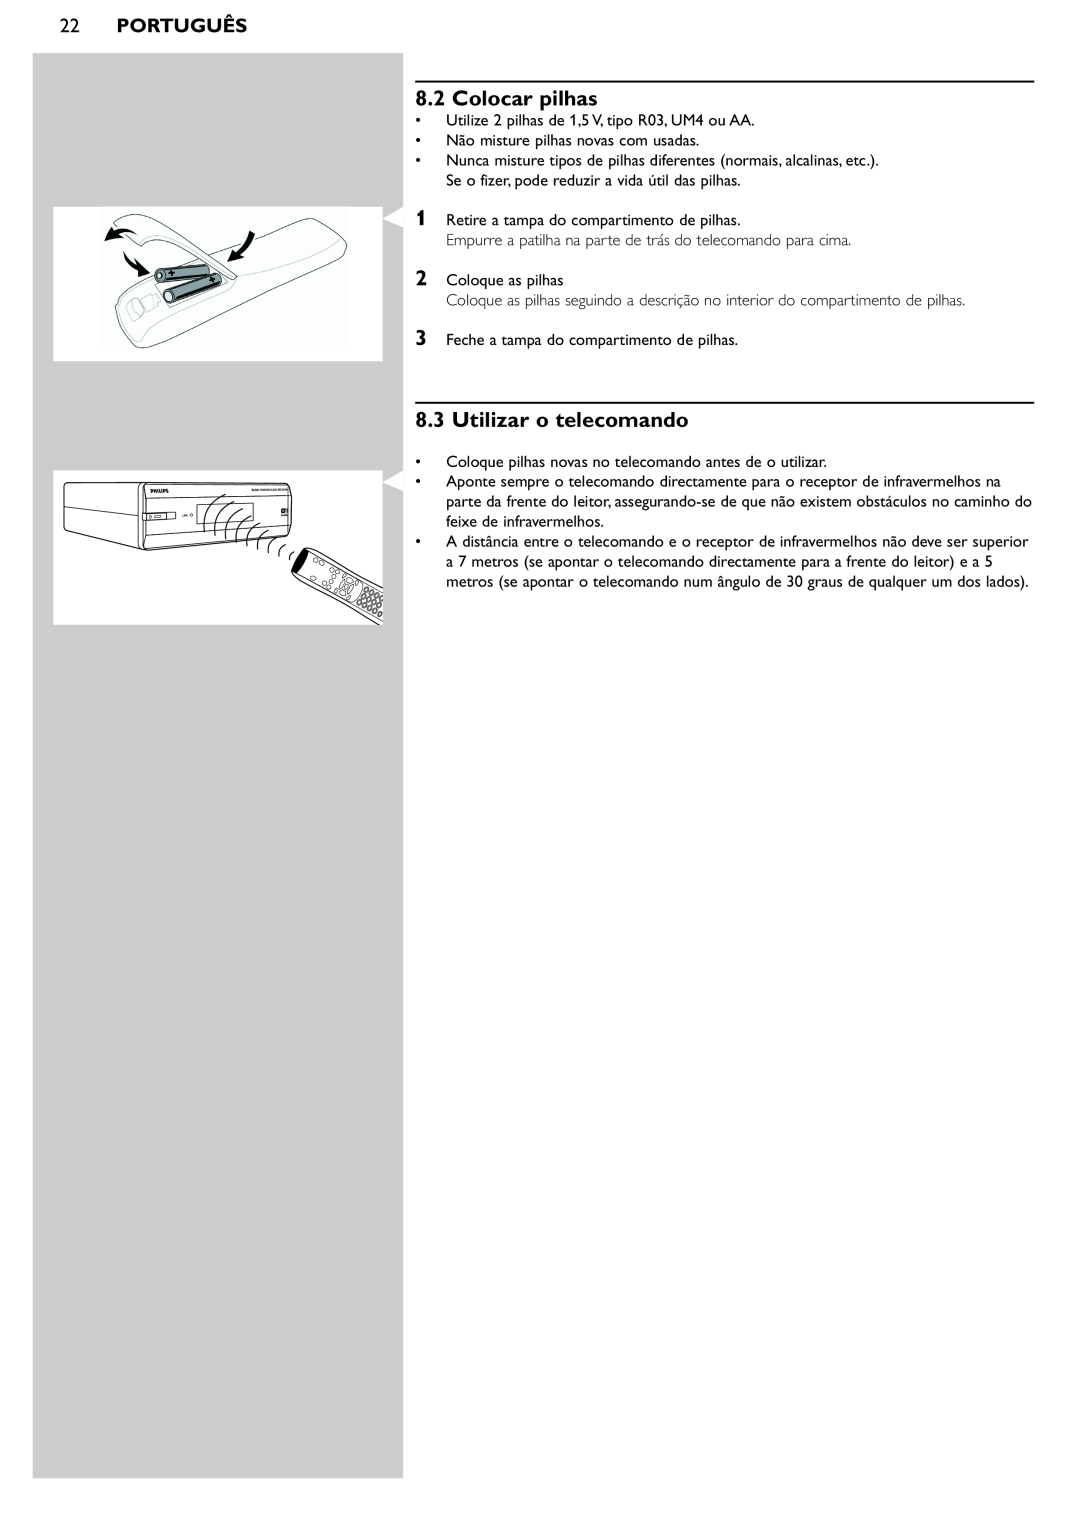 Philips SL50i manual Colocar pilhas, Utilizar o telecomando, 22PORTUGUÊS 